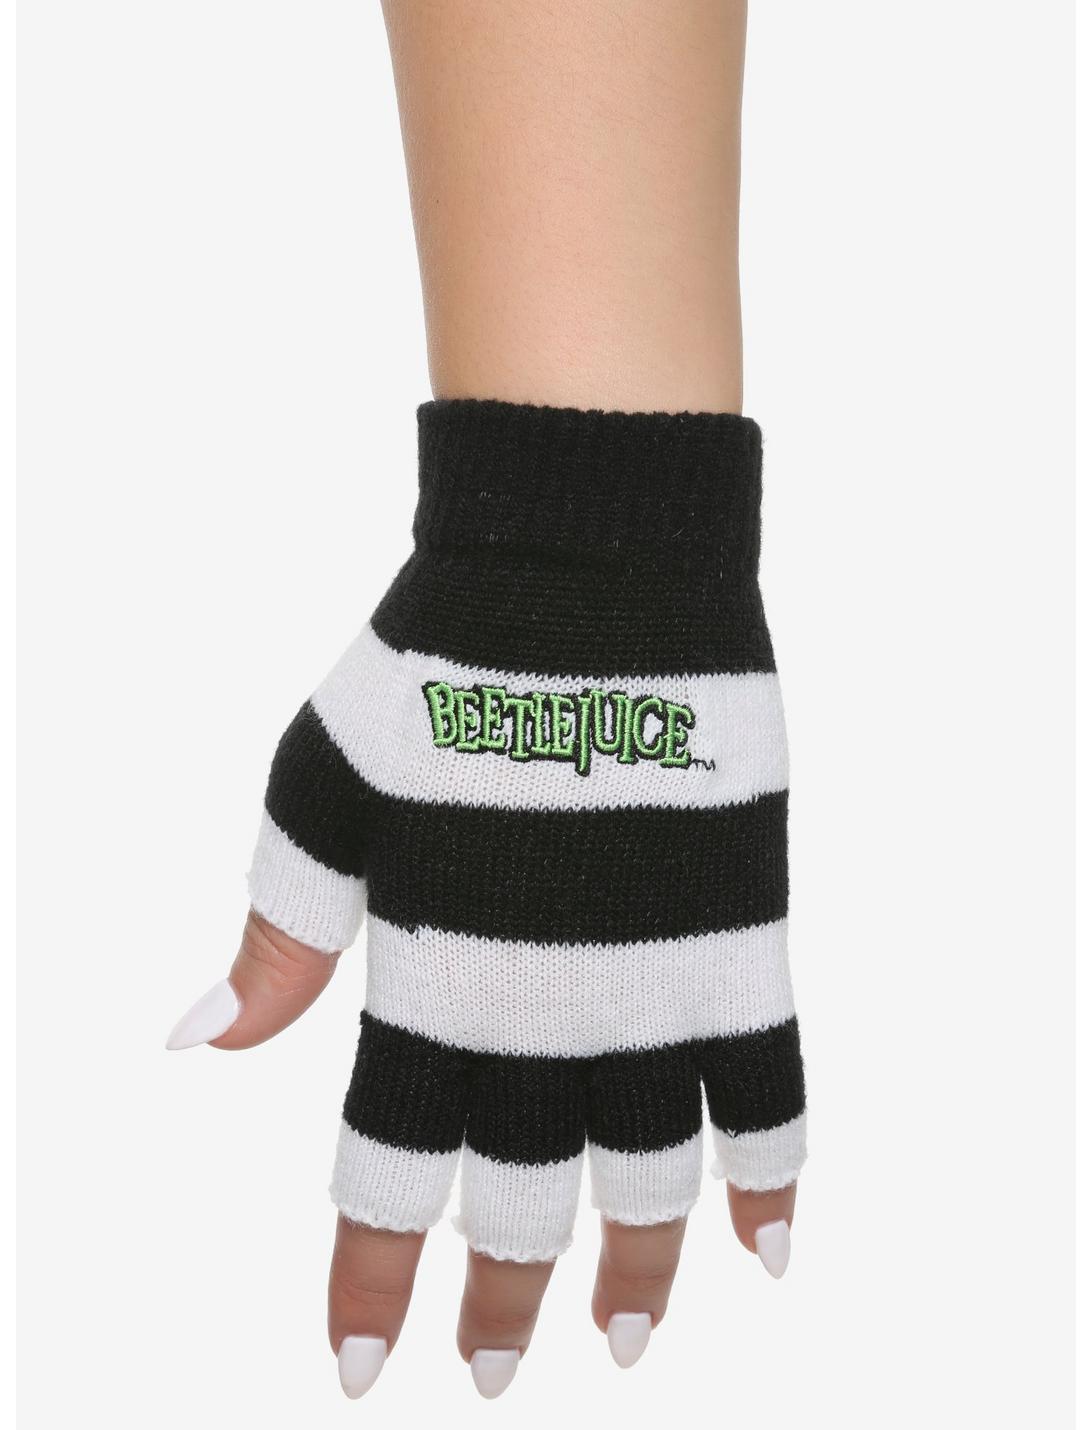 Beetlejuice Striped Fingerless Gloves, , hi-res